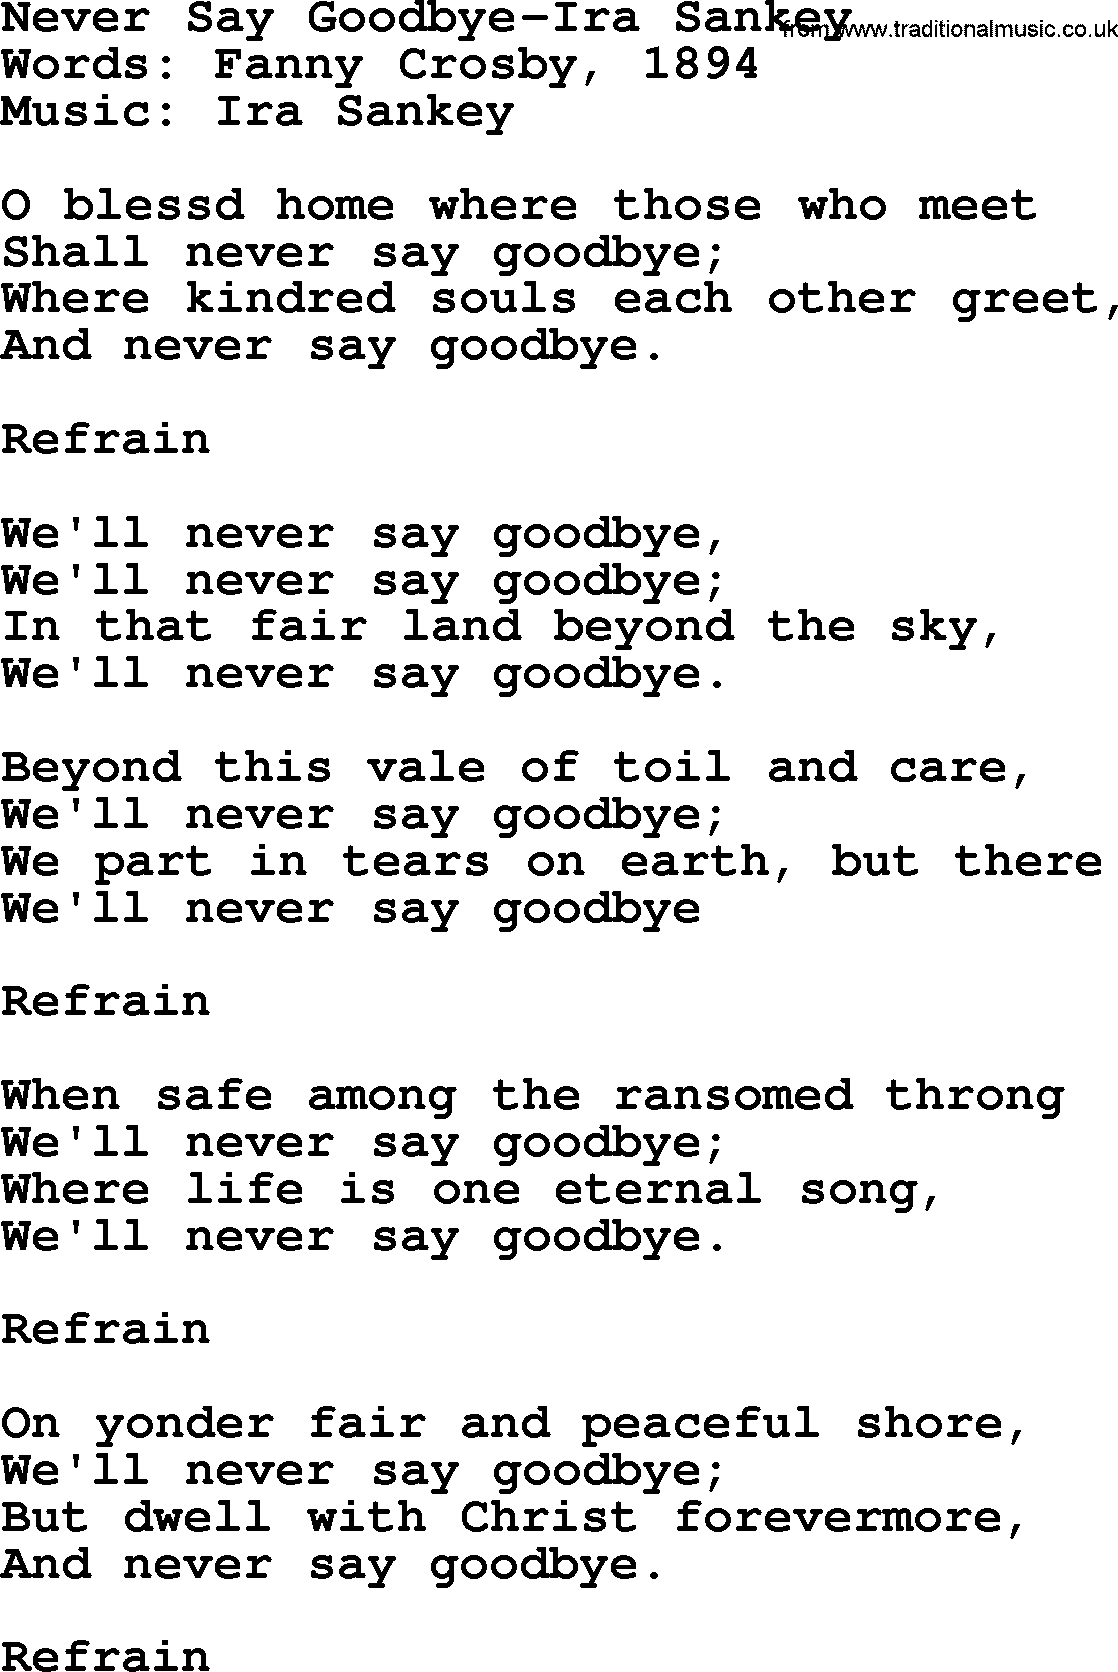 Ira Sankey hymn: Never Say Goodbye-Ira Sankey, lyrics